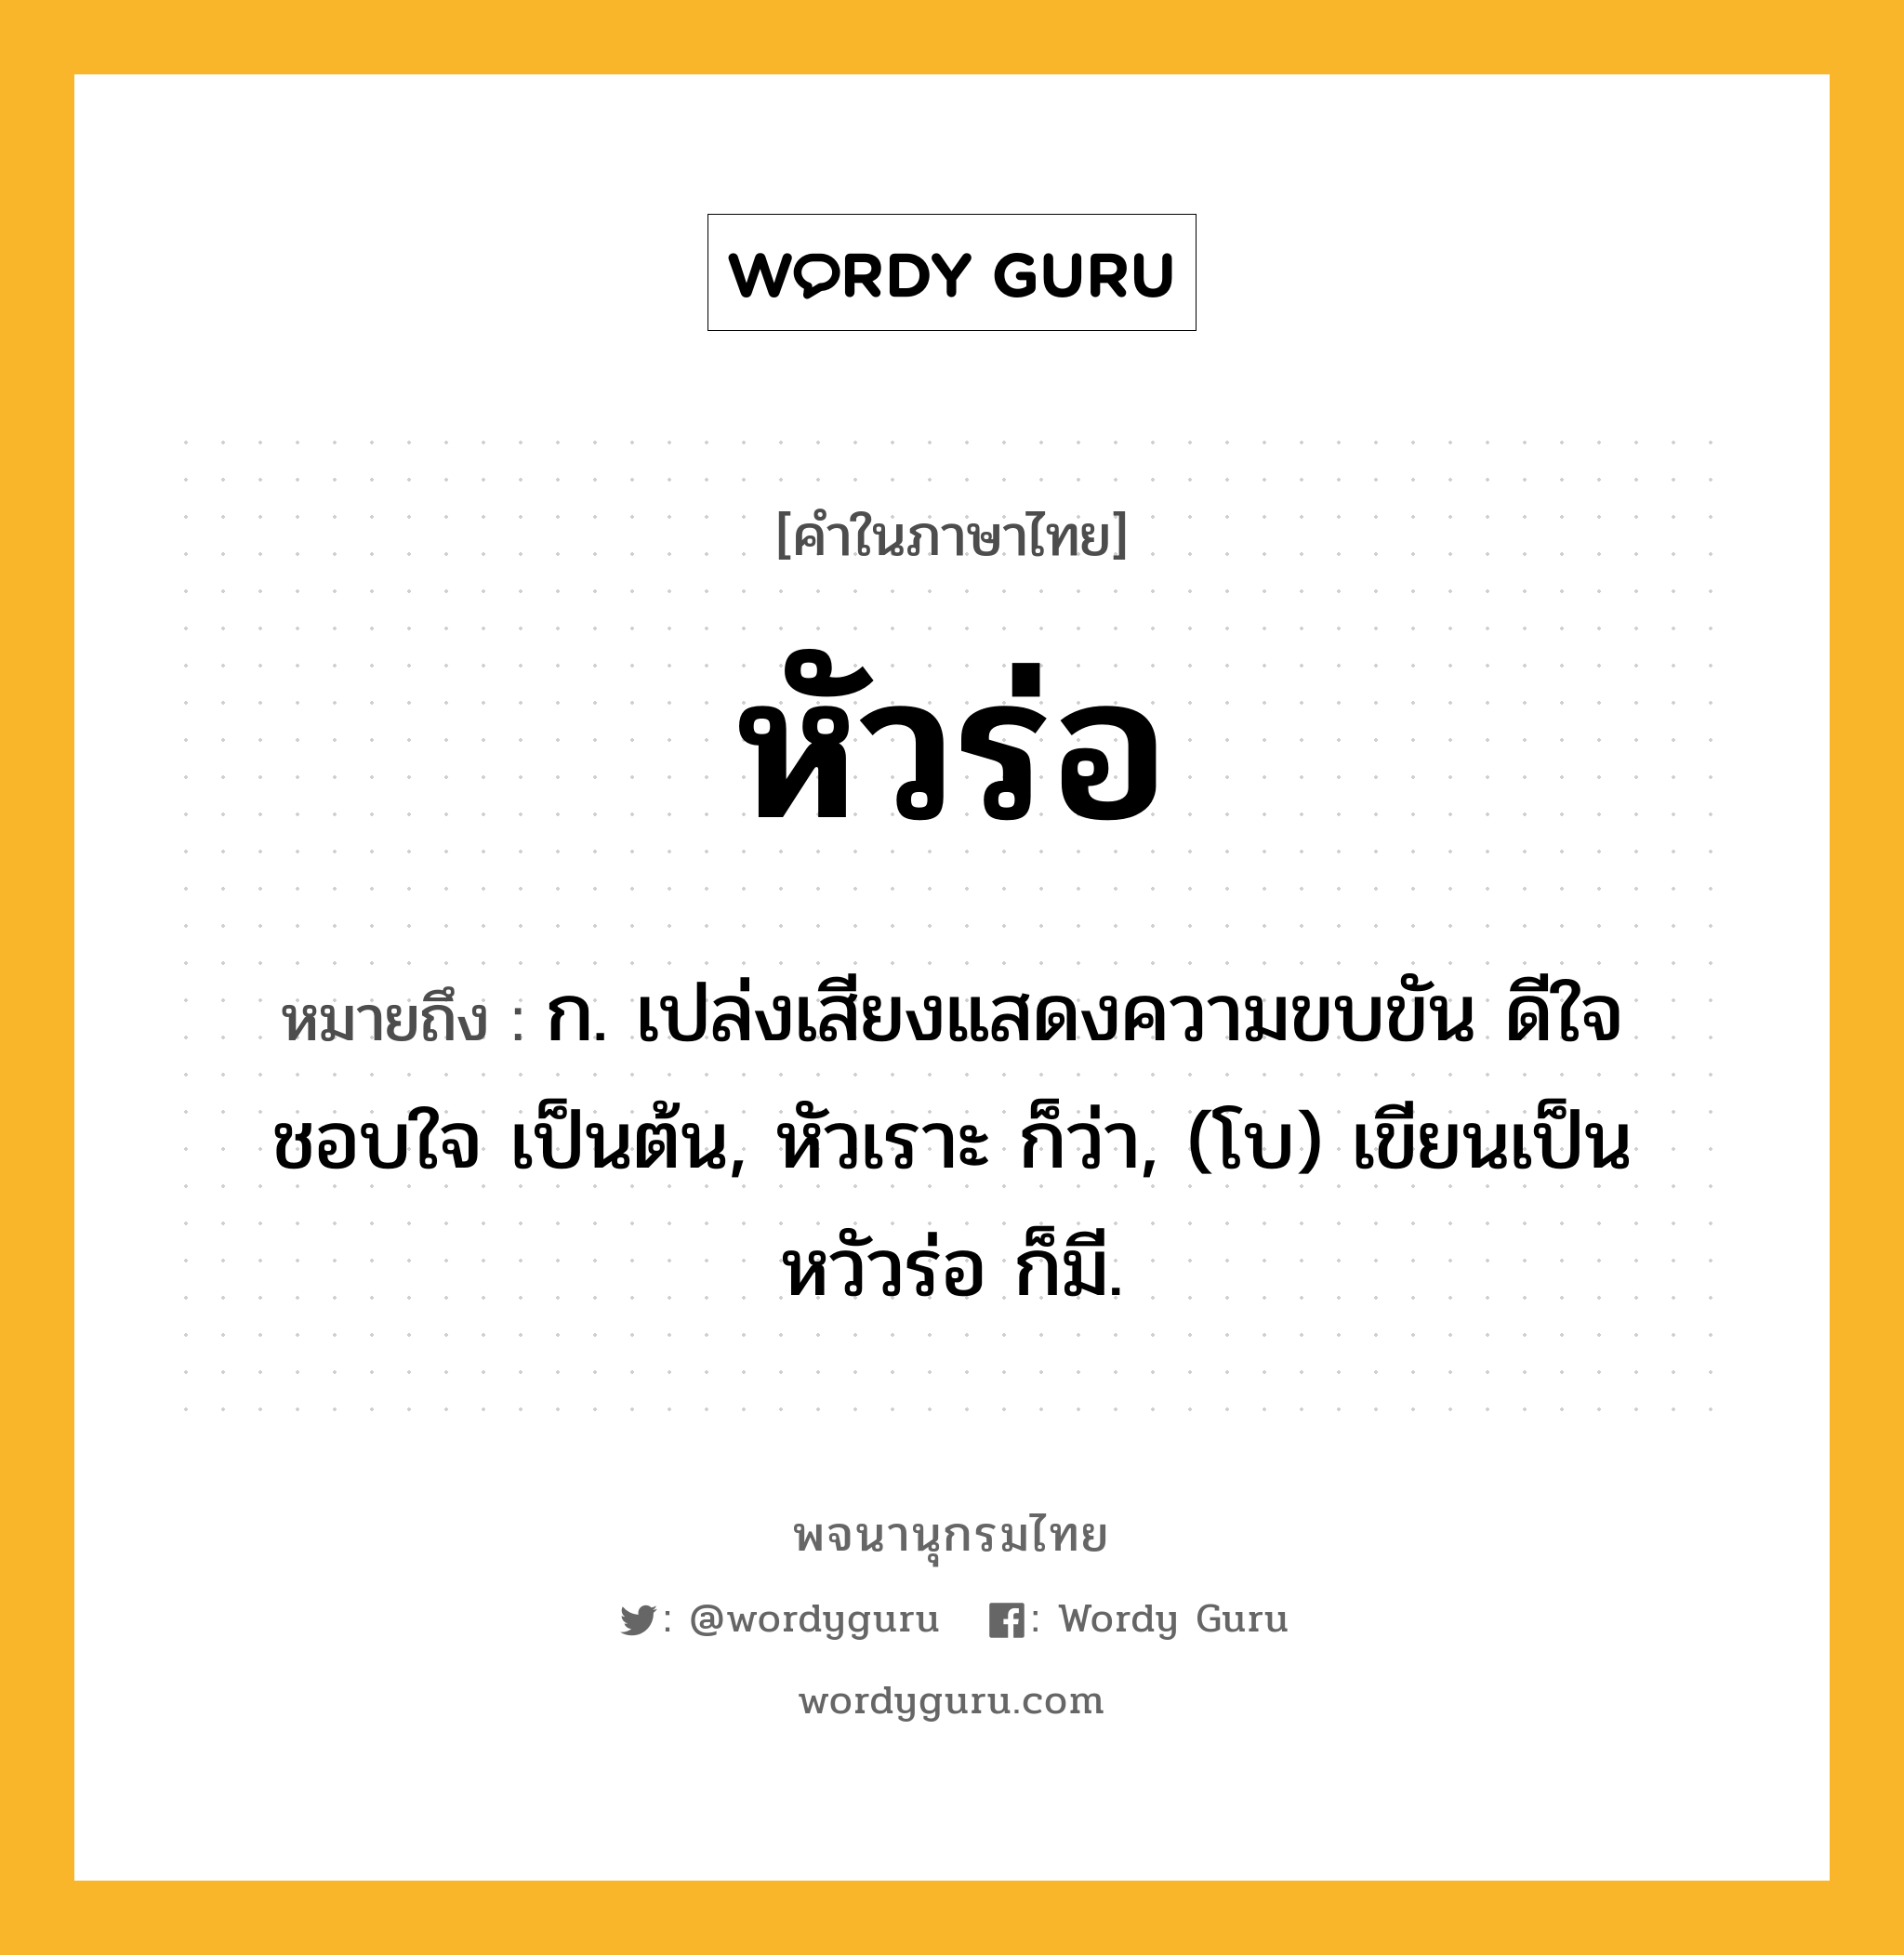 หัวร่อ หมายถึงอะไร?, คำในภาษาไทย หัวร่อ หมายถึง ก. เปล่งเสียงแสดงความขบขัน ดีใจ ชอบใจ เป็นต้น, หัวเราะ ก็ว่า, (โบ) เขียนเป็น หวัวร่อ ก็มี.